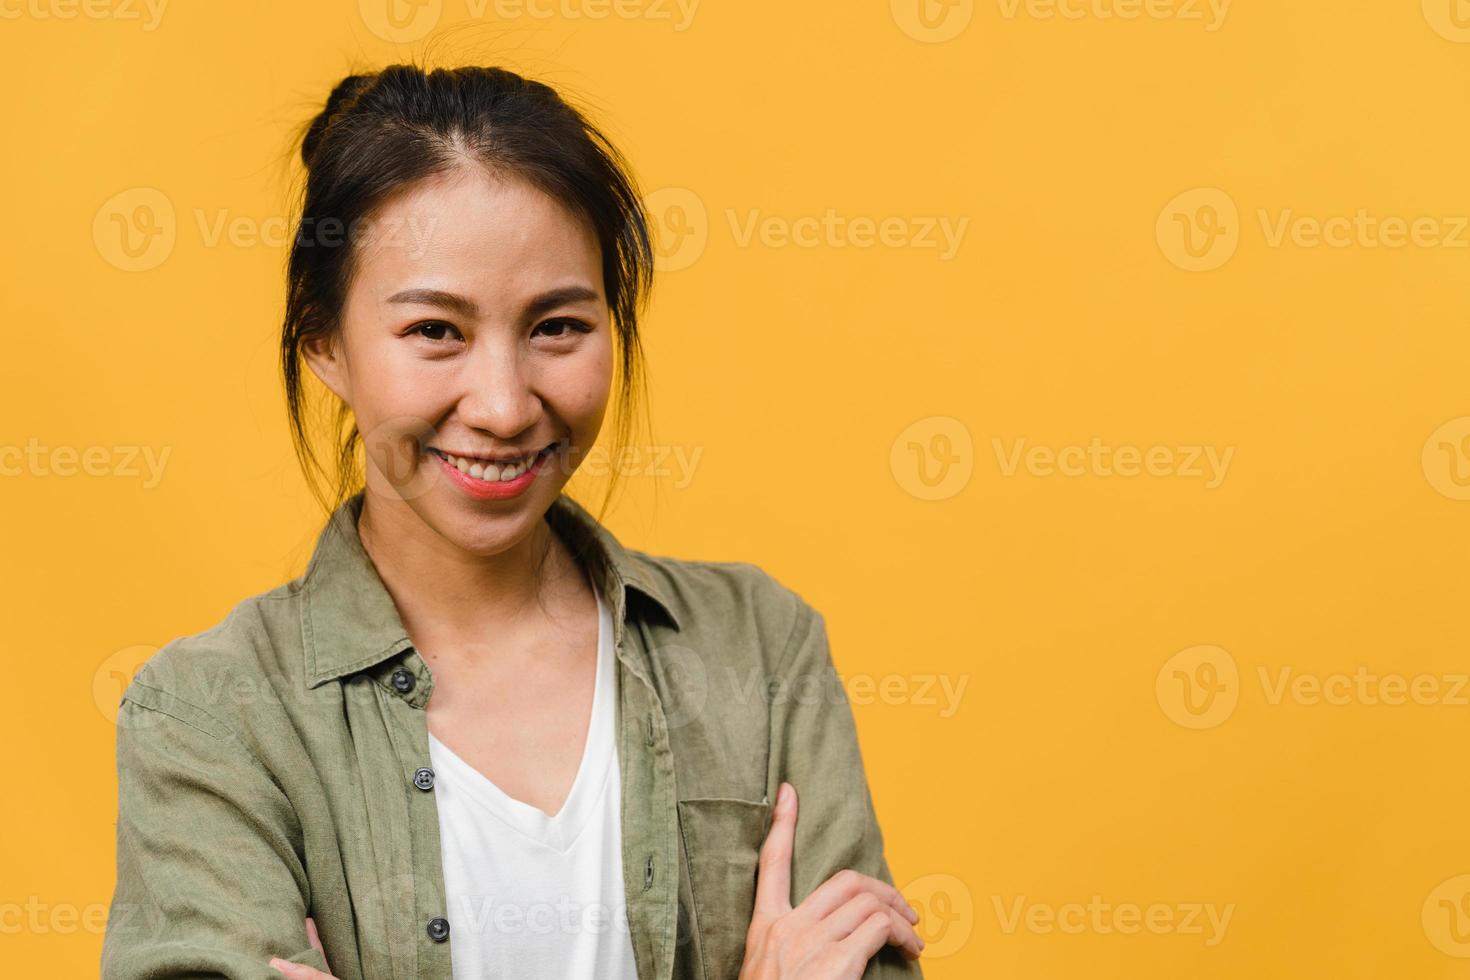 Retrato de joven asiática con expresión positiva, brazos cruzados, sonrisa amplia, vestida con ropa casual y mirando a cámara sobre fondo amarillo. feliz adorable mujer alegre se regocija con el éxito. foto